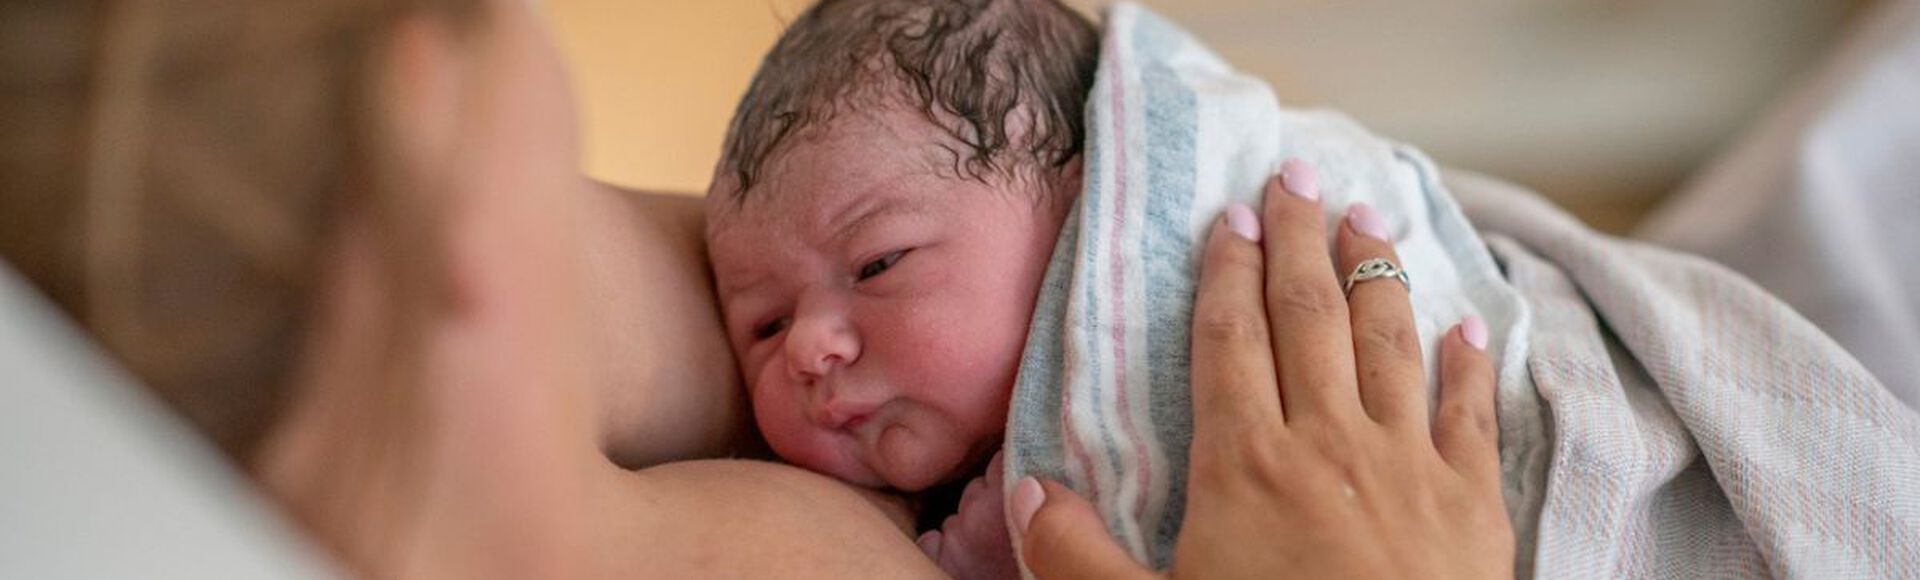 Gestante no pós-parto segurando seu bebê recém-nascido